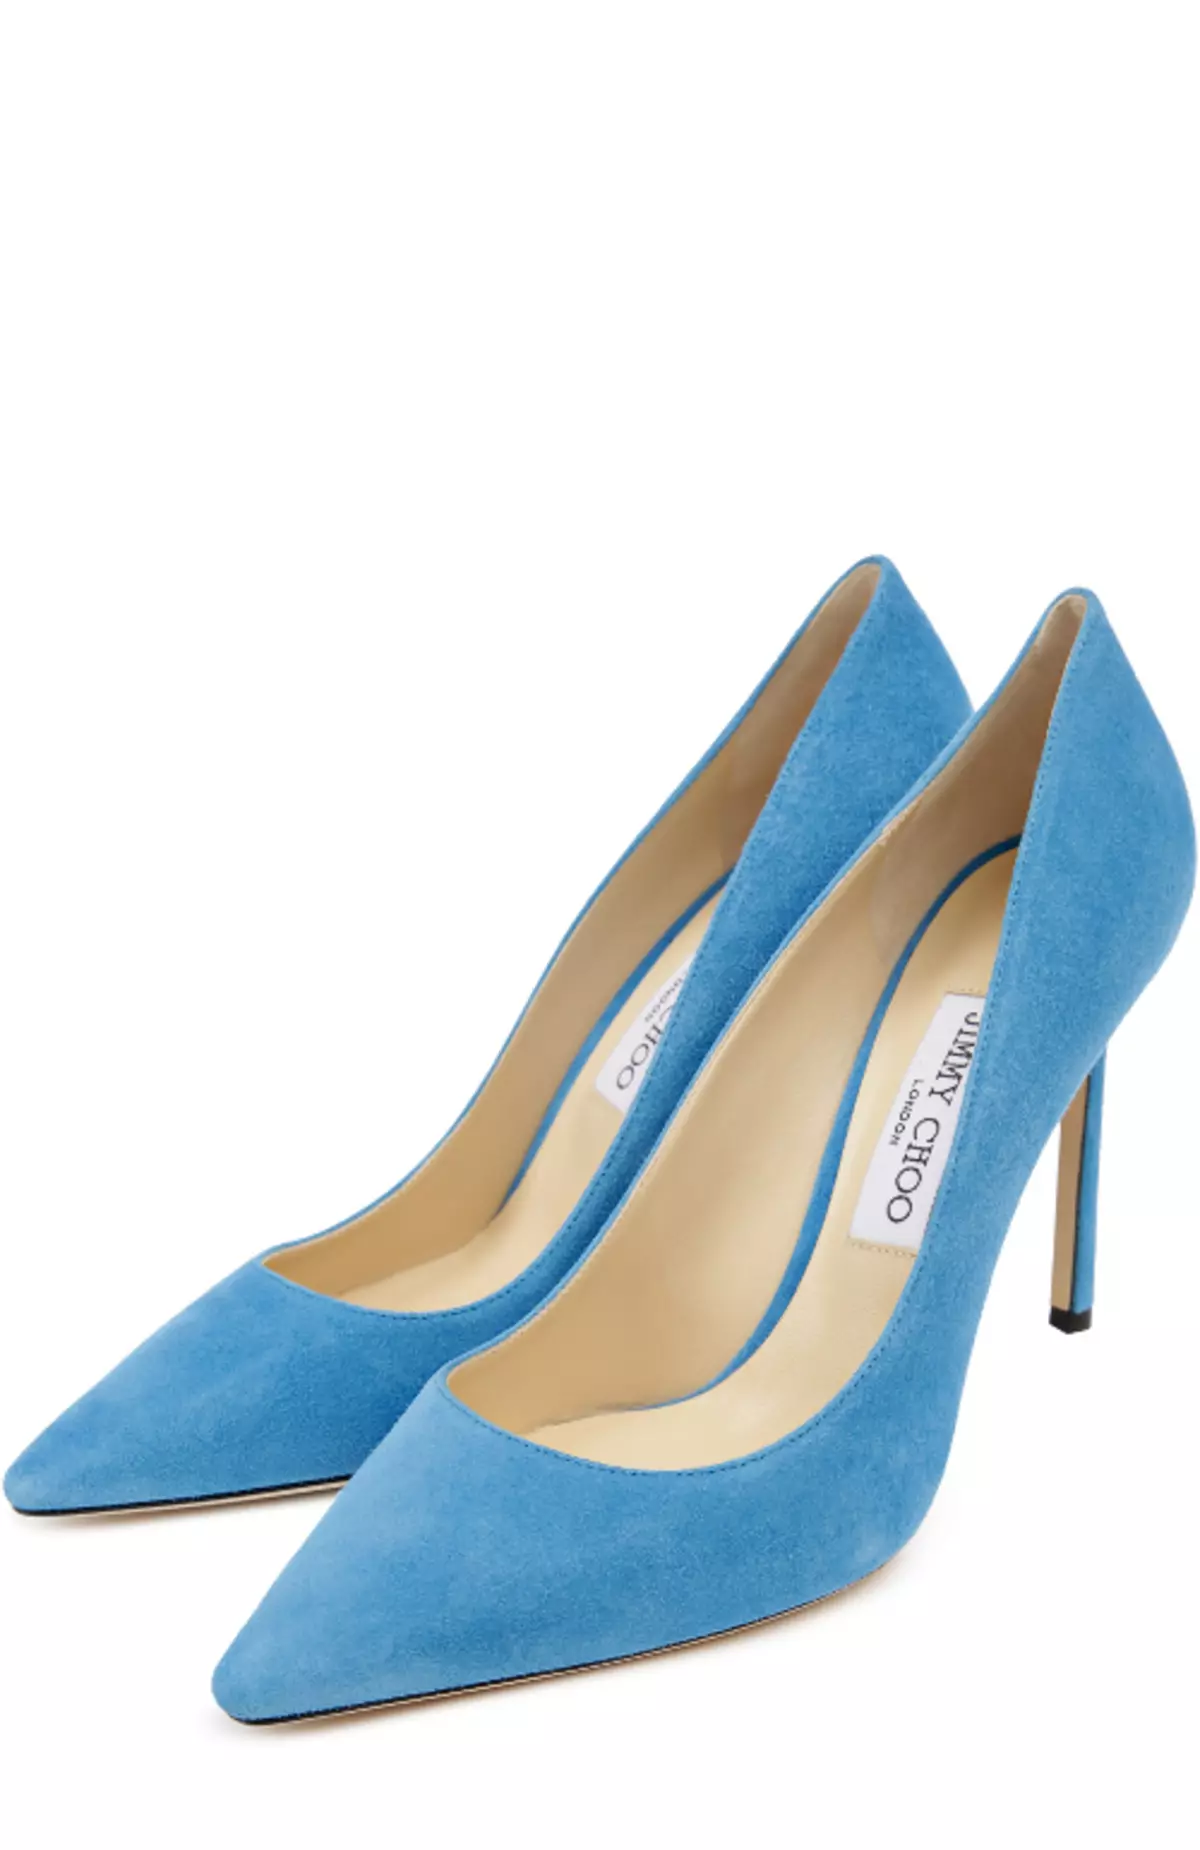 Plave cipele (56 fotografija): Što nositi modele plave boje i plavim potplatima, prekrasnim slikama 2367_31